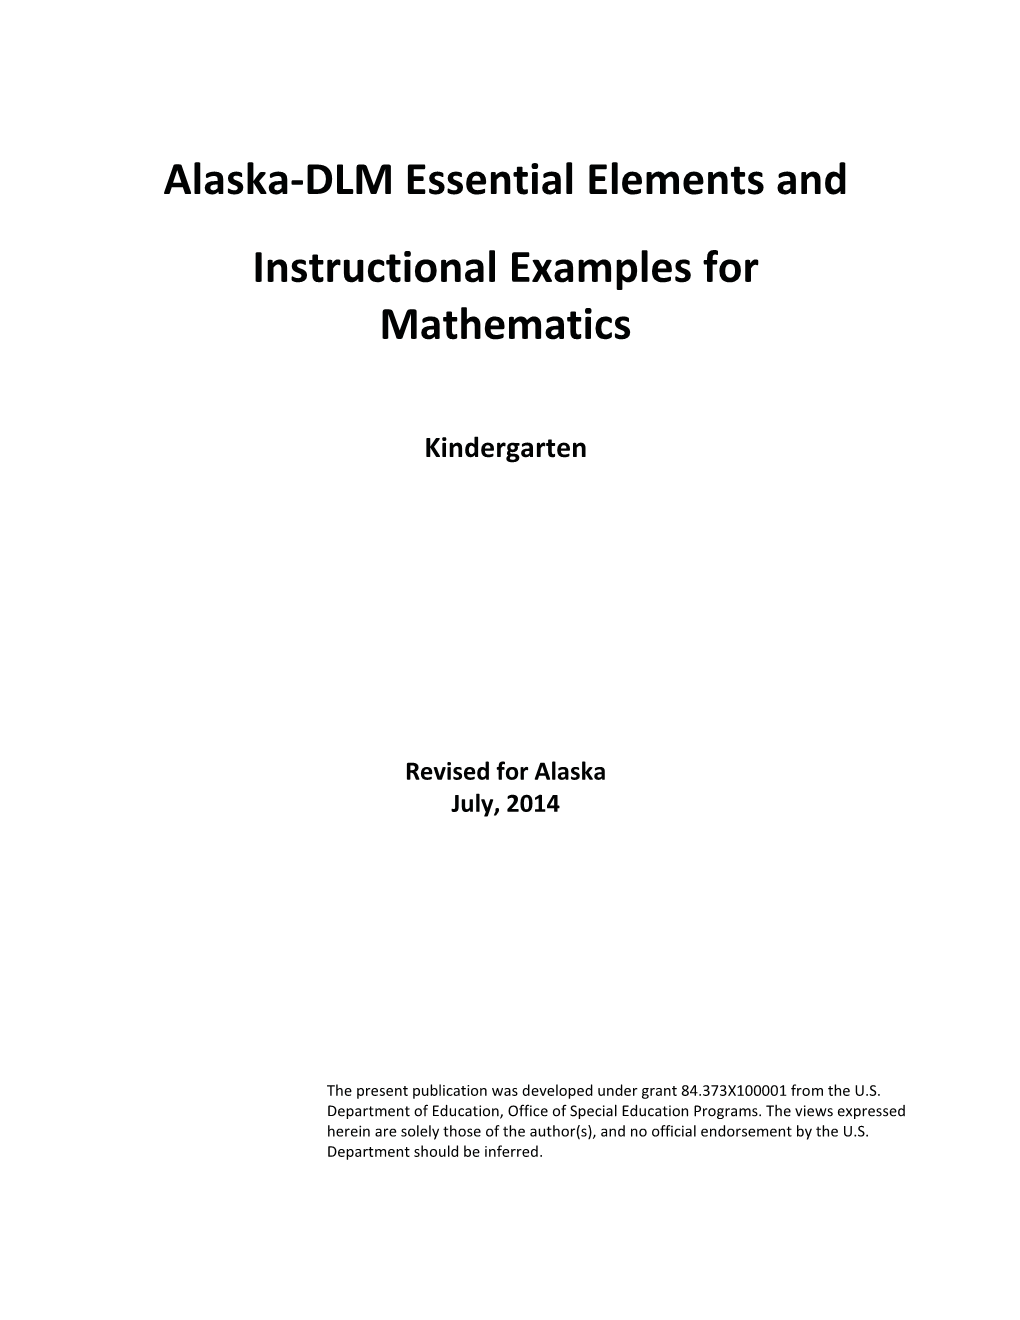 Math Kindergarten Essential Elements Draft.Pdf